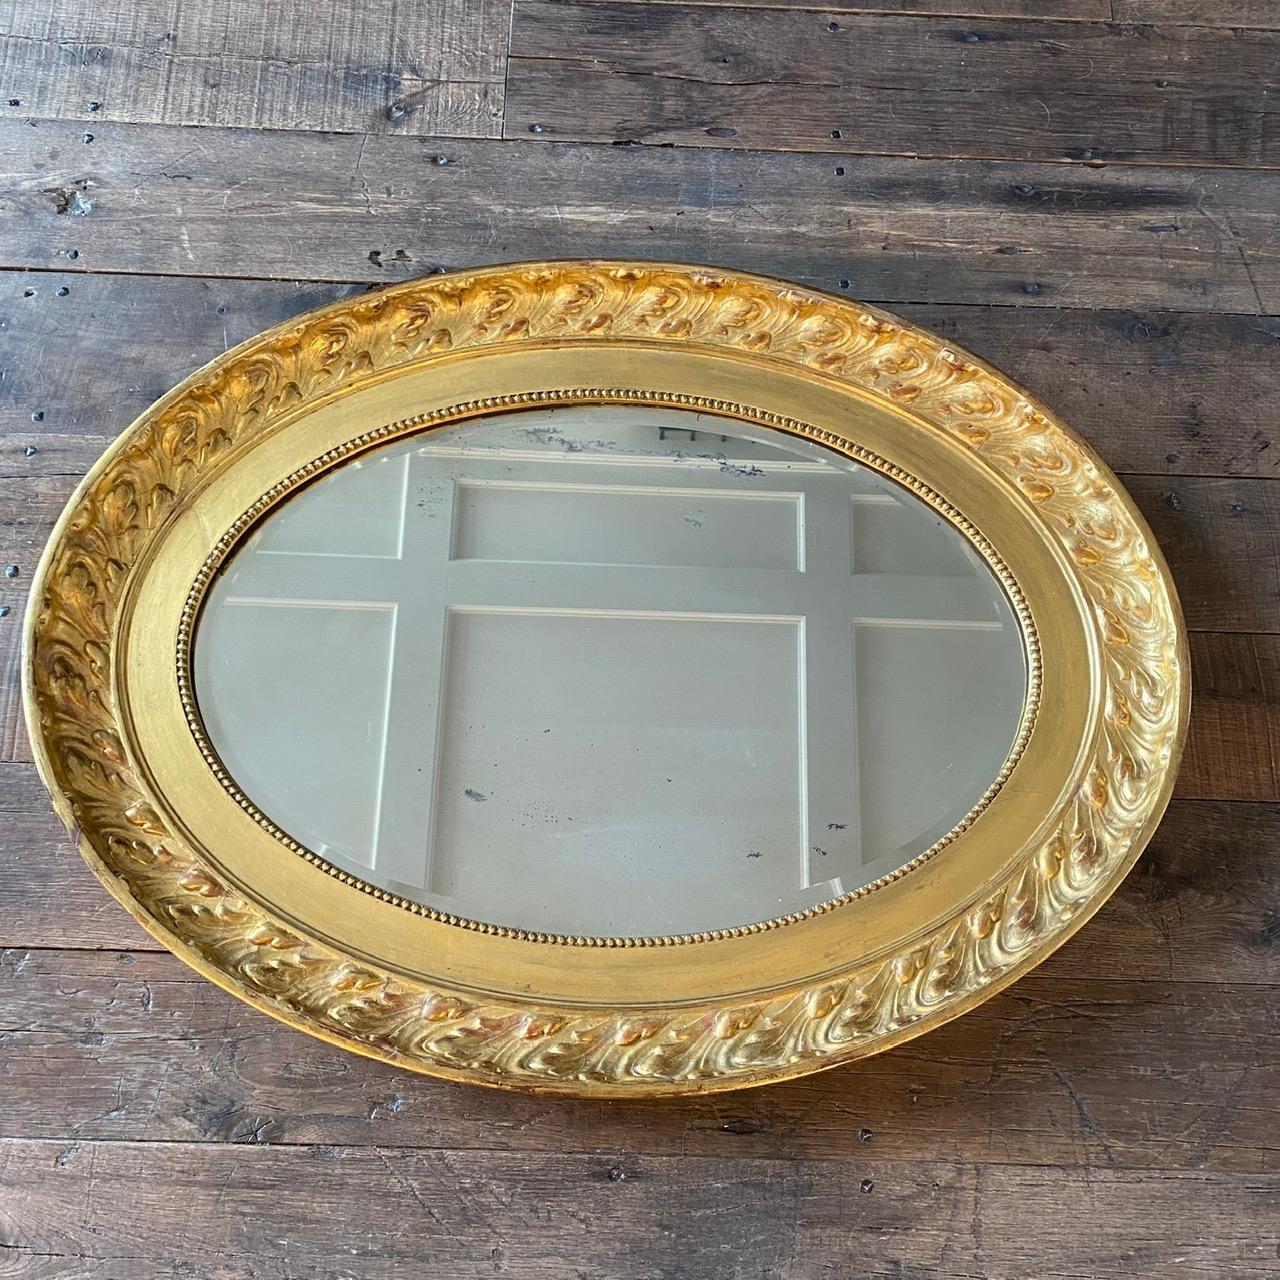 Il s'agit d'un magnifique miroir avec une finition à la feuille d'or authentique et brillante, avec des touches d'argile rouge italienne broyée derrière la feuille d'or. La plaque miroir est propre et claire. Peut être accroché verticalement et